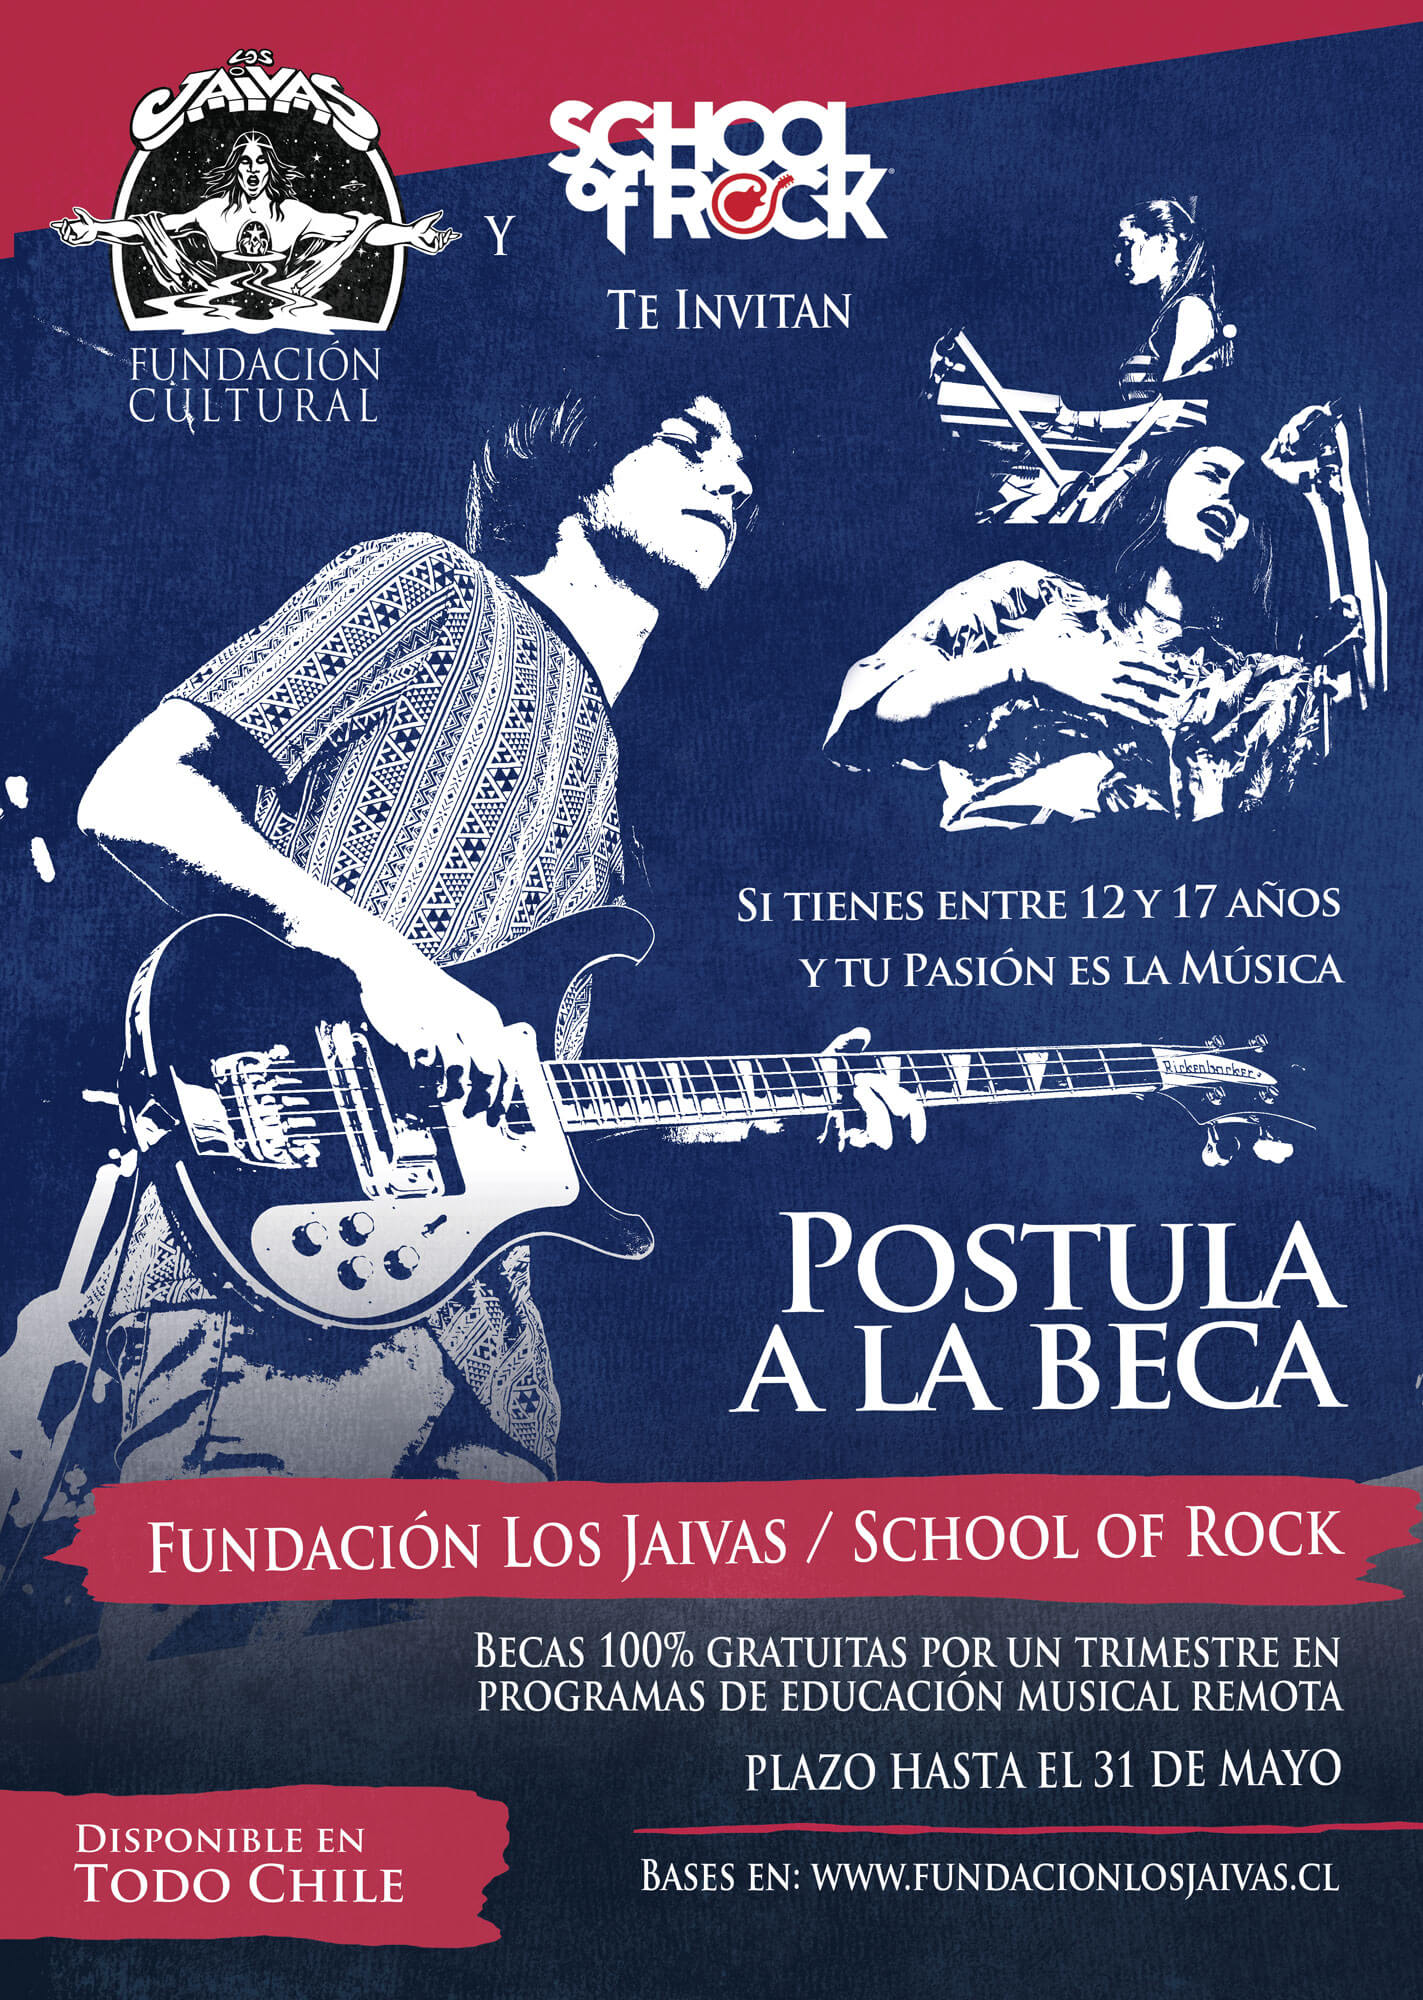 beca fundacion los jaivas school of rock